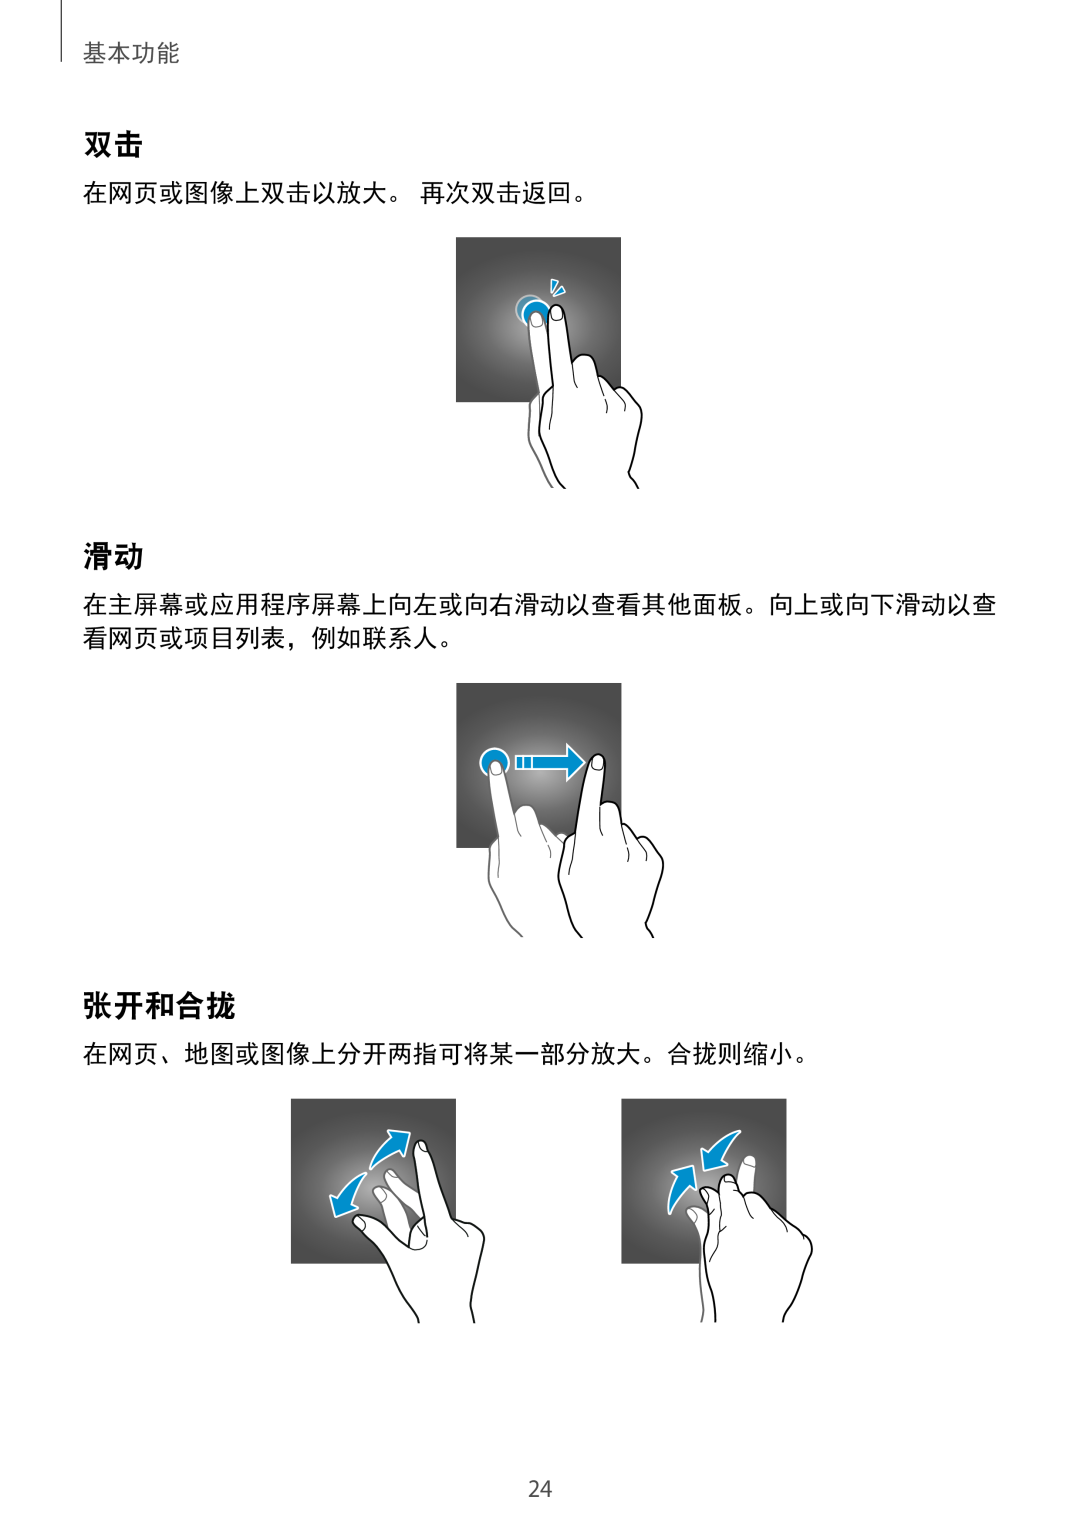 Samsung SM-A710FZDFXXV, SM-A710FZKFXXV, SM-A310FZDDXXV 张开和合拢, 在网页或图像上双击以放大。 再次双击返回。, 在网页、地图或图像上分开两指可将某一部分放大。合拢则缩小。, 基本功能 